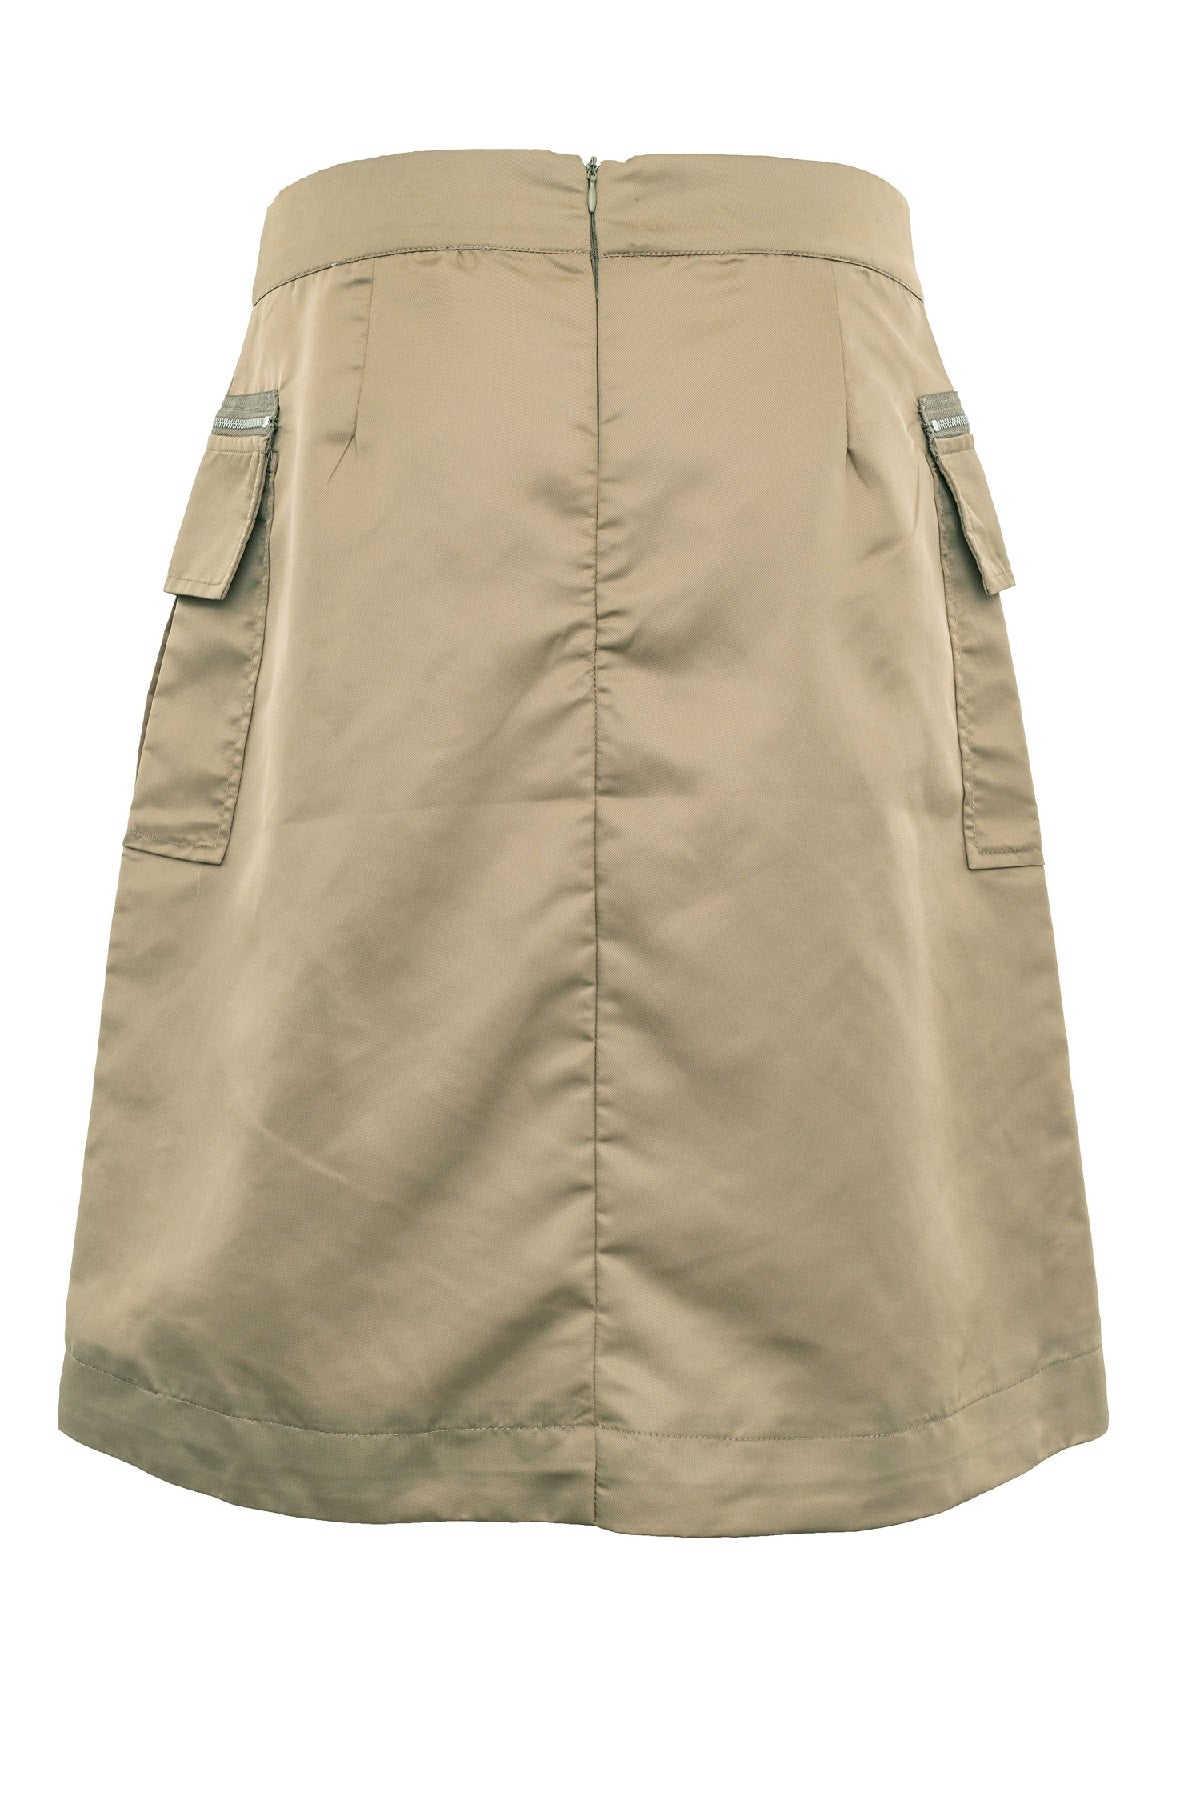 Costamani  Jungle skirt, Army